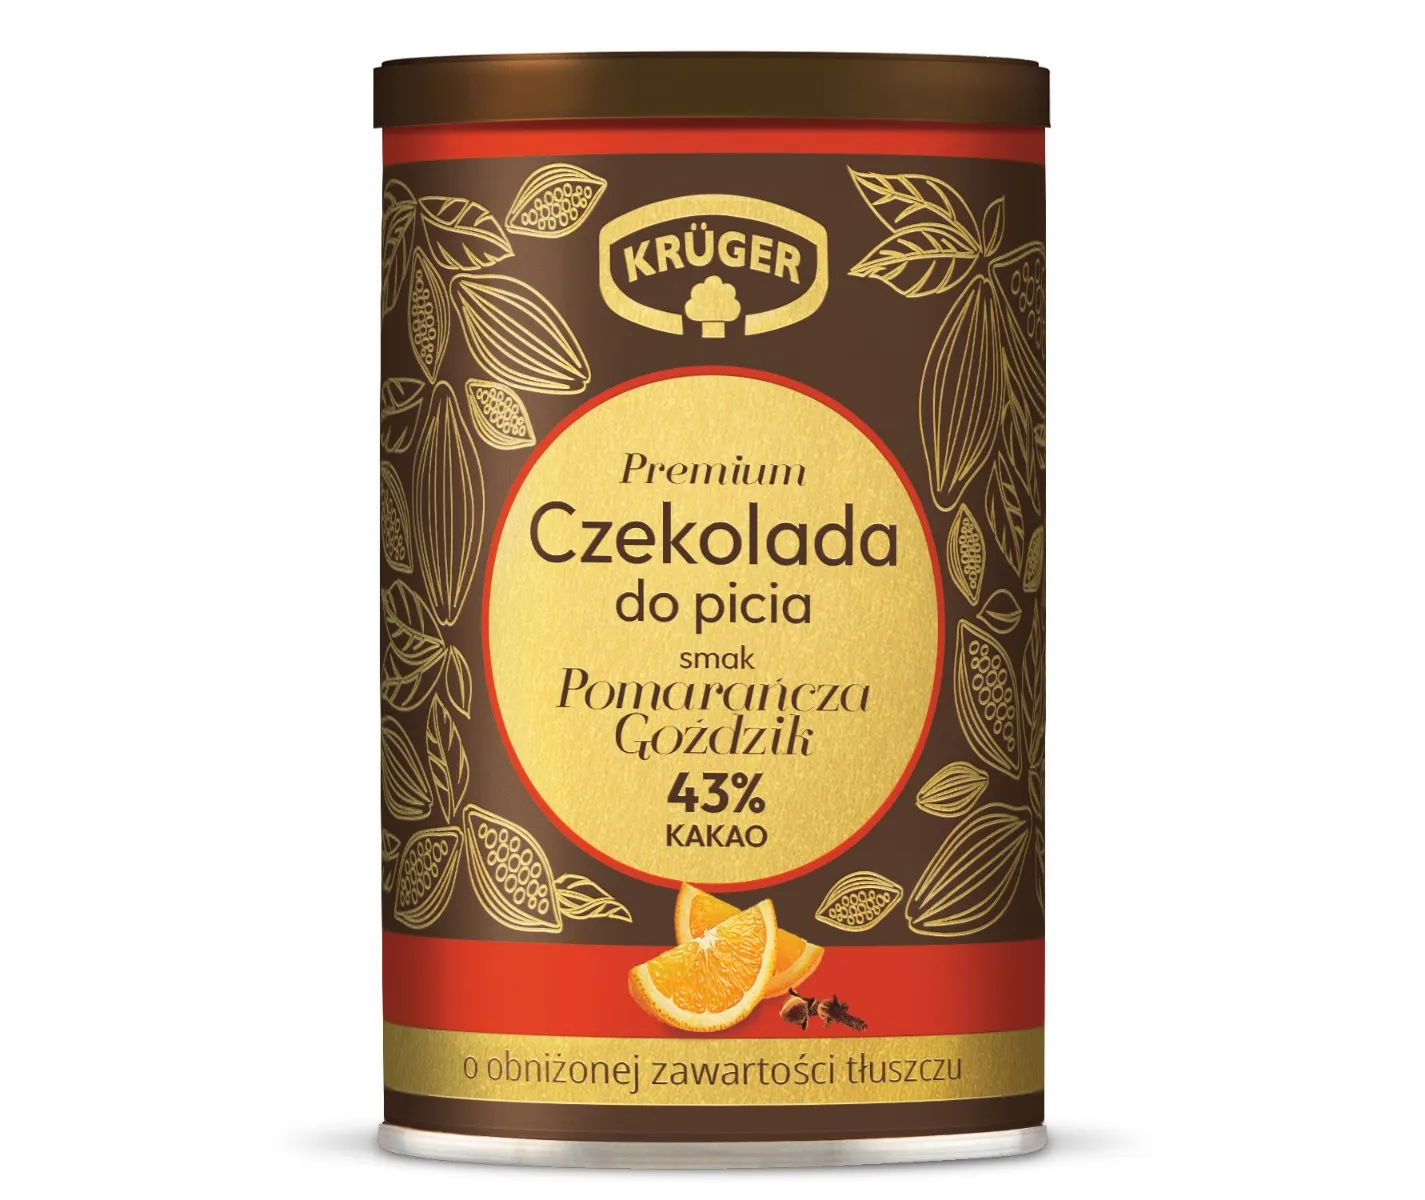 Krüger Premium czekolada do picia pomarańcza-goździk, 220 g